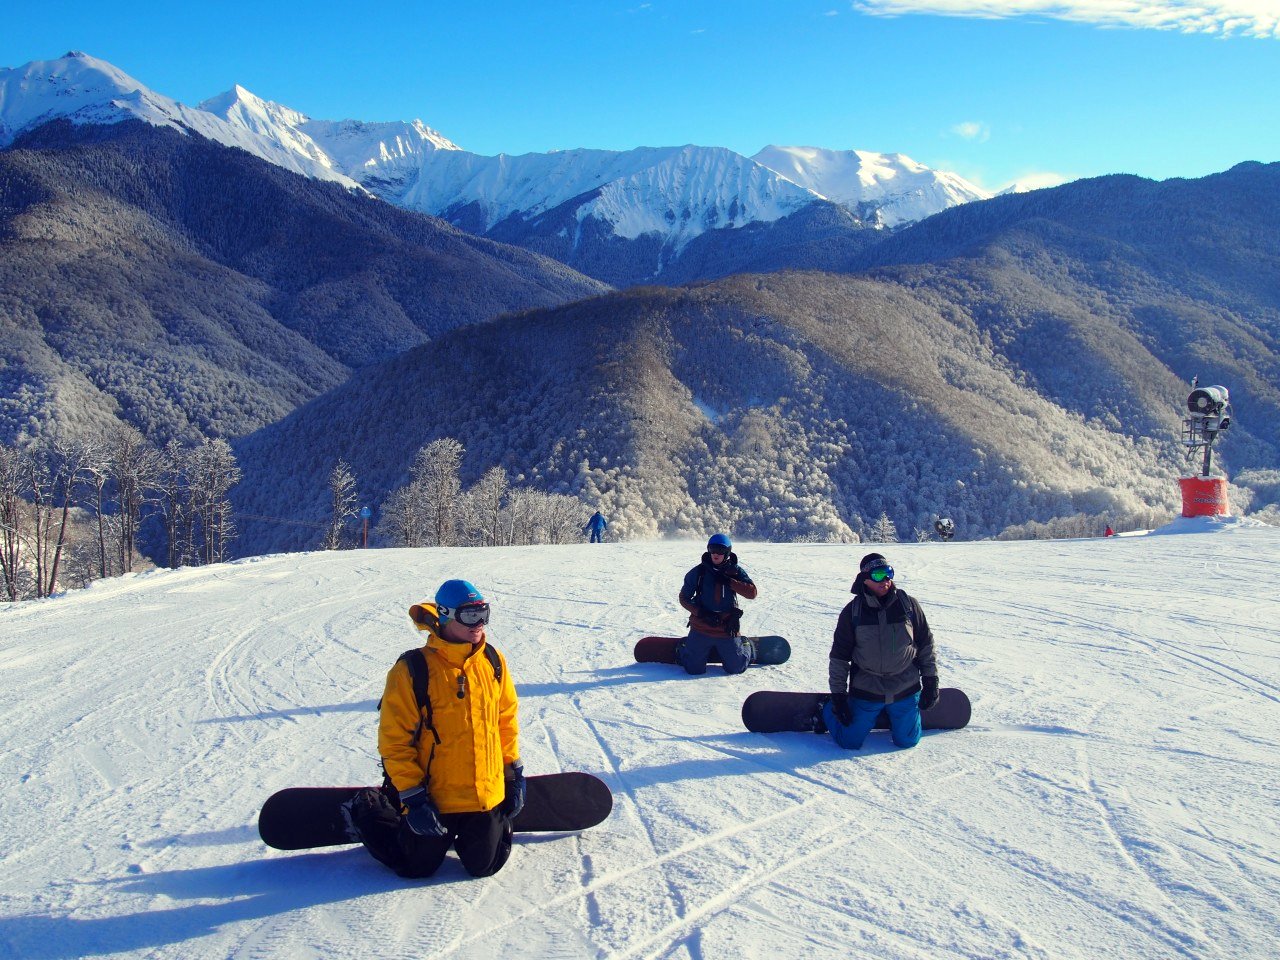 Единый ски-пасс на горнолыжных курортах Красной Поляны будет запущен в декабре 2017 года